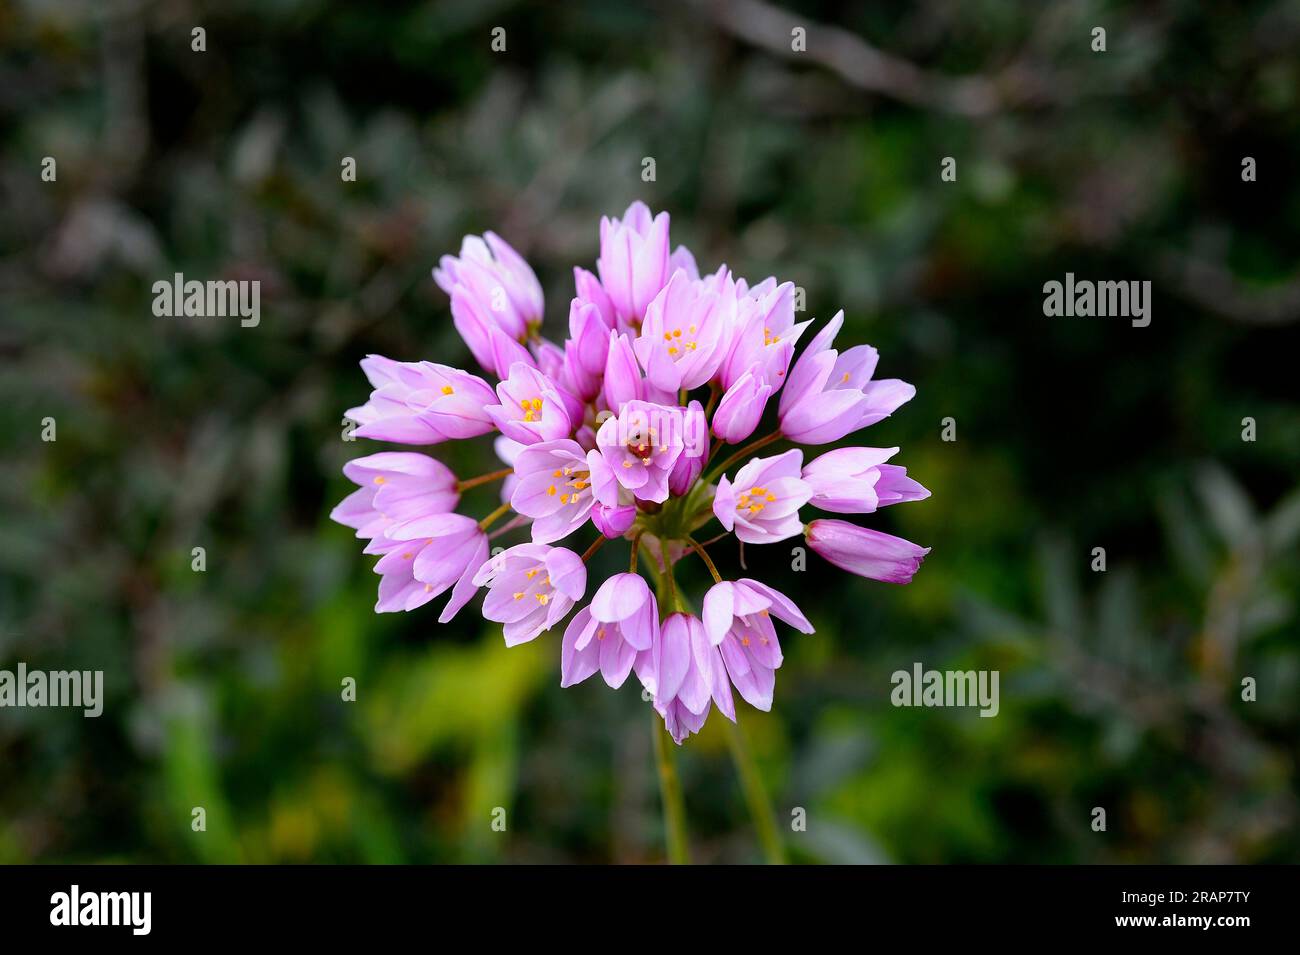 L'aglio rosato (Allium roseum) è un aglio selvatico commestibile originario del bacino del Mediterraneo. Le infiorescenze all'aglio rosato sono delle piccole. Angiosperme. Monoco Foto Stock